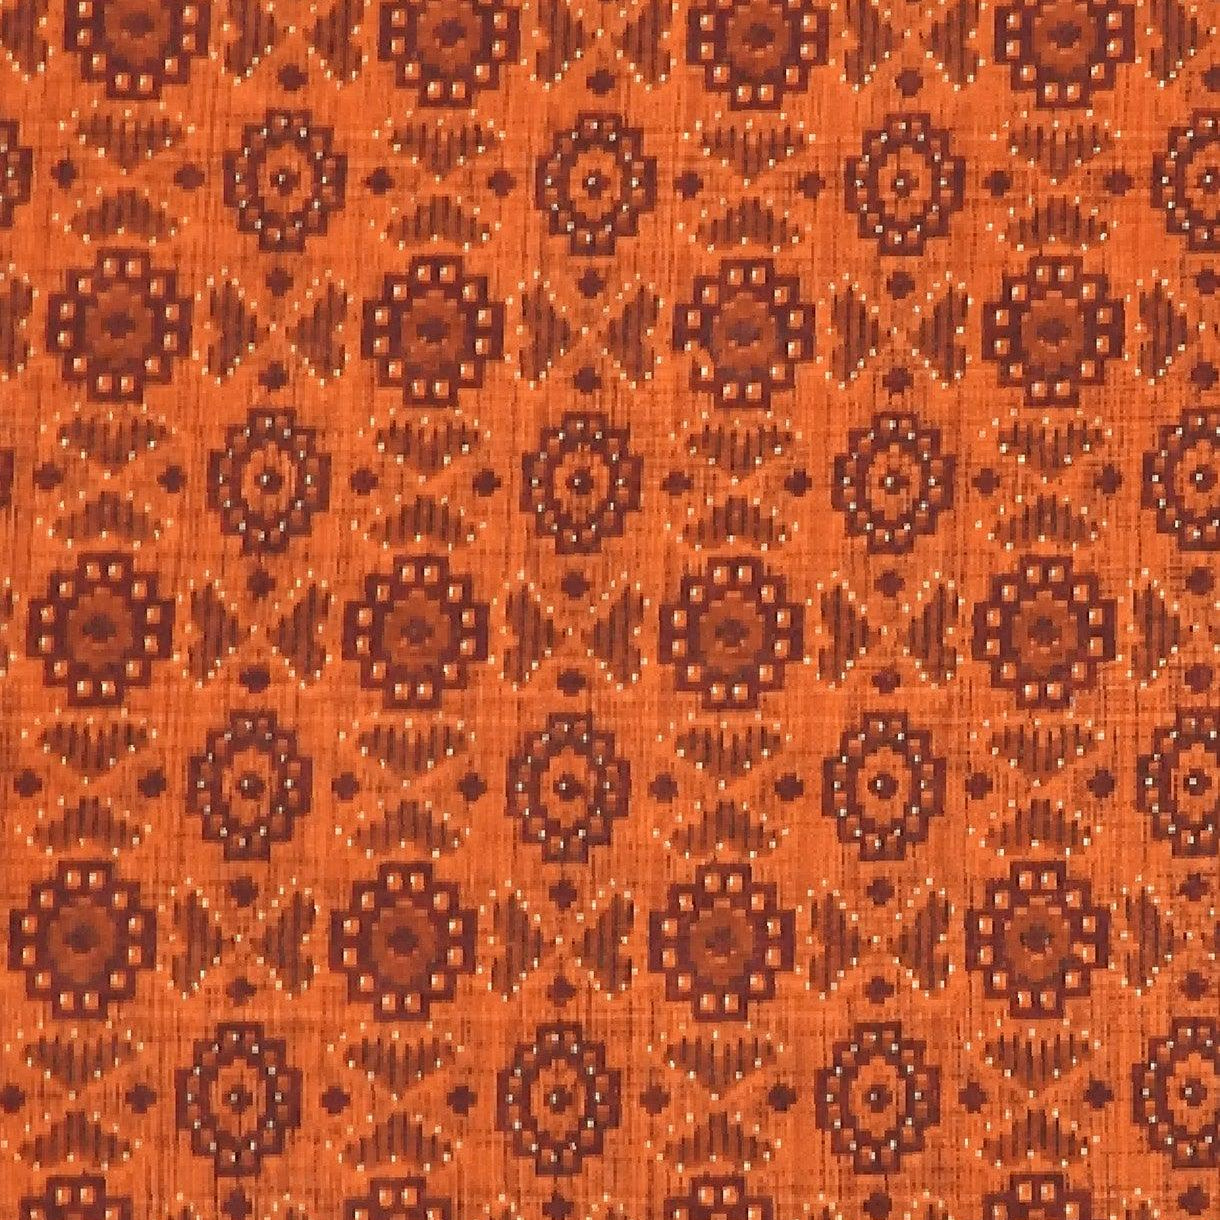 Orange Traditional Ethnic Designs Printed Pure Mulmul Cotton Zari Border Saree - Shop Karishma